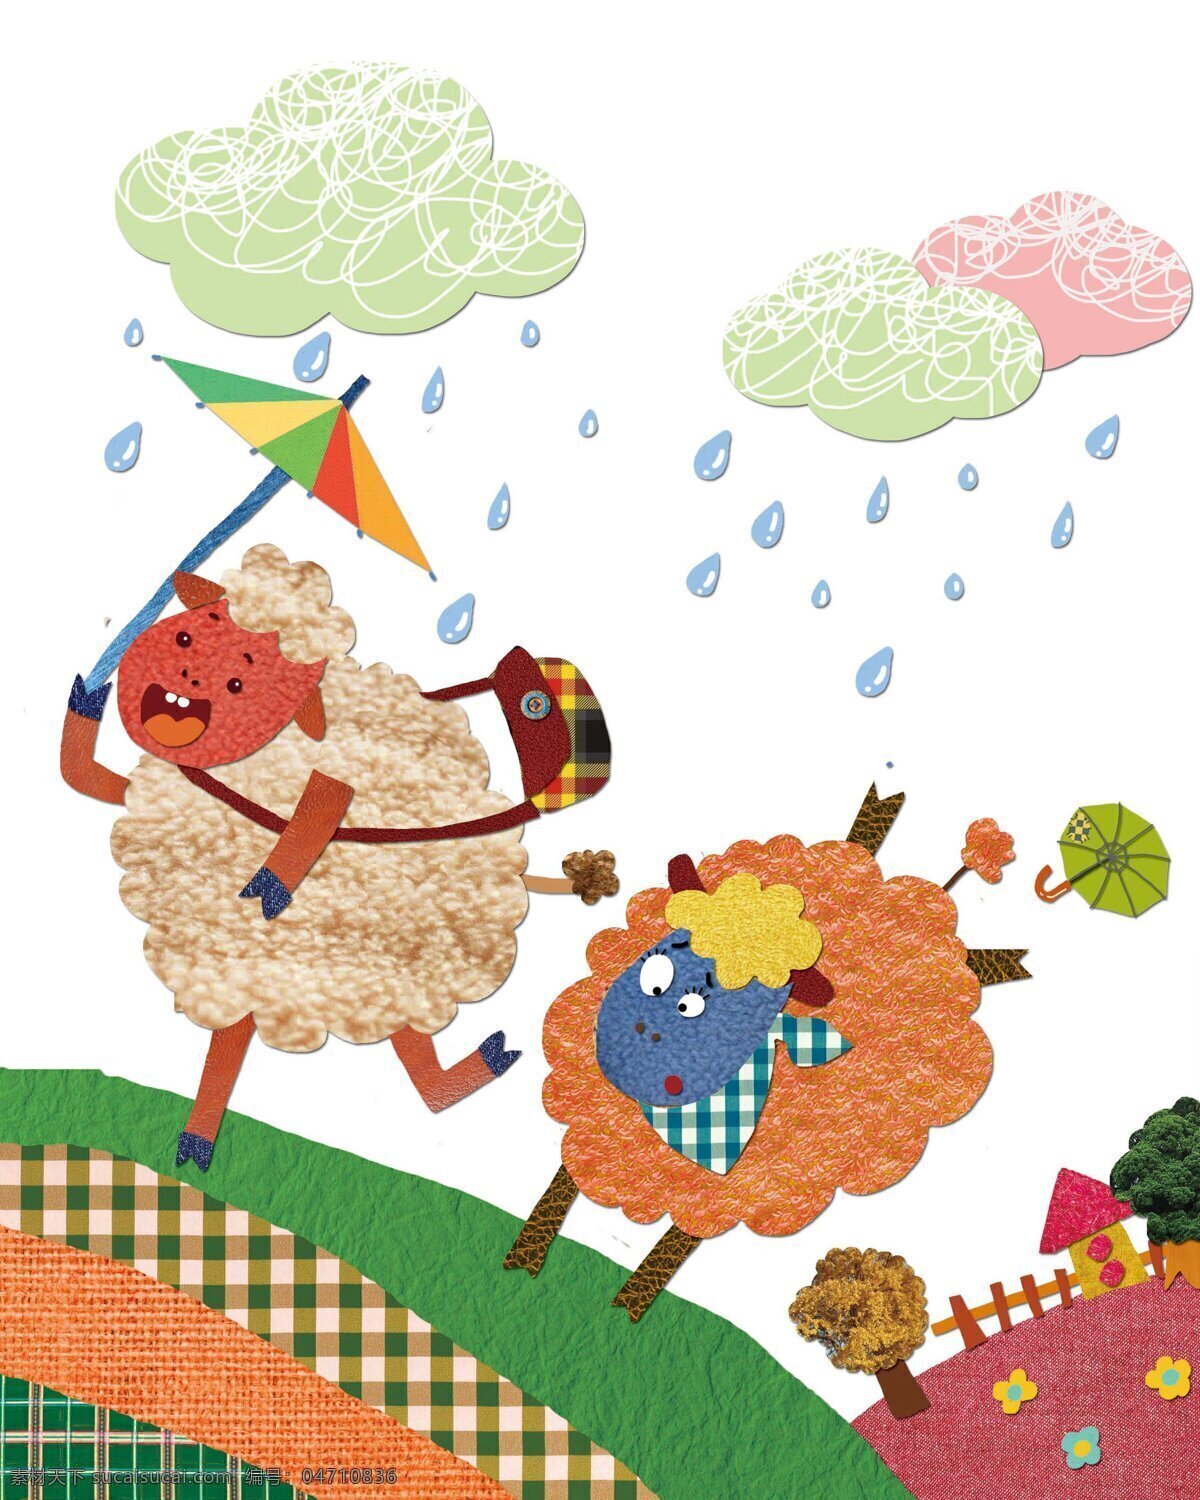 雨 中 即景 背景图片 壁纸 插画 绵羊 牧场 插画集